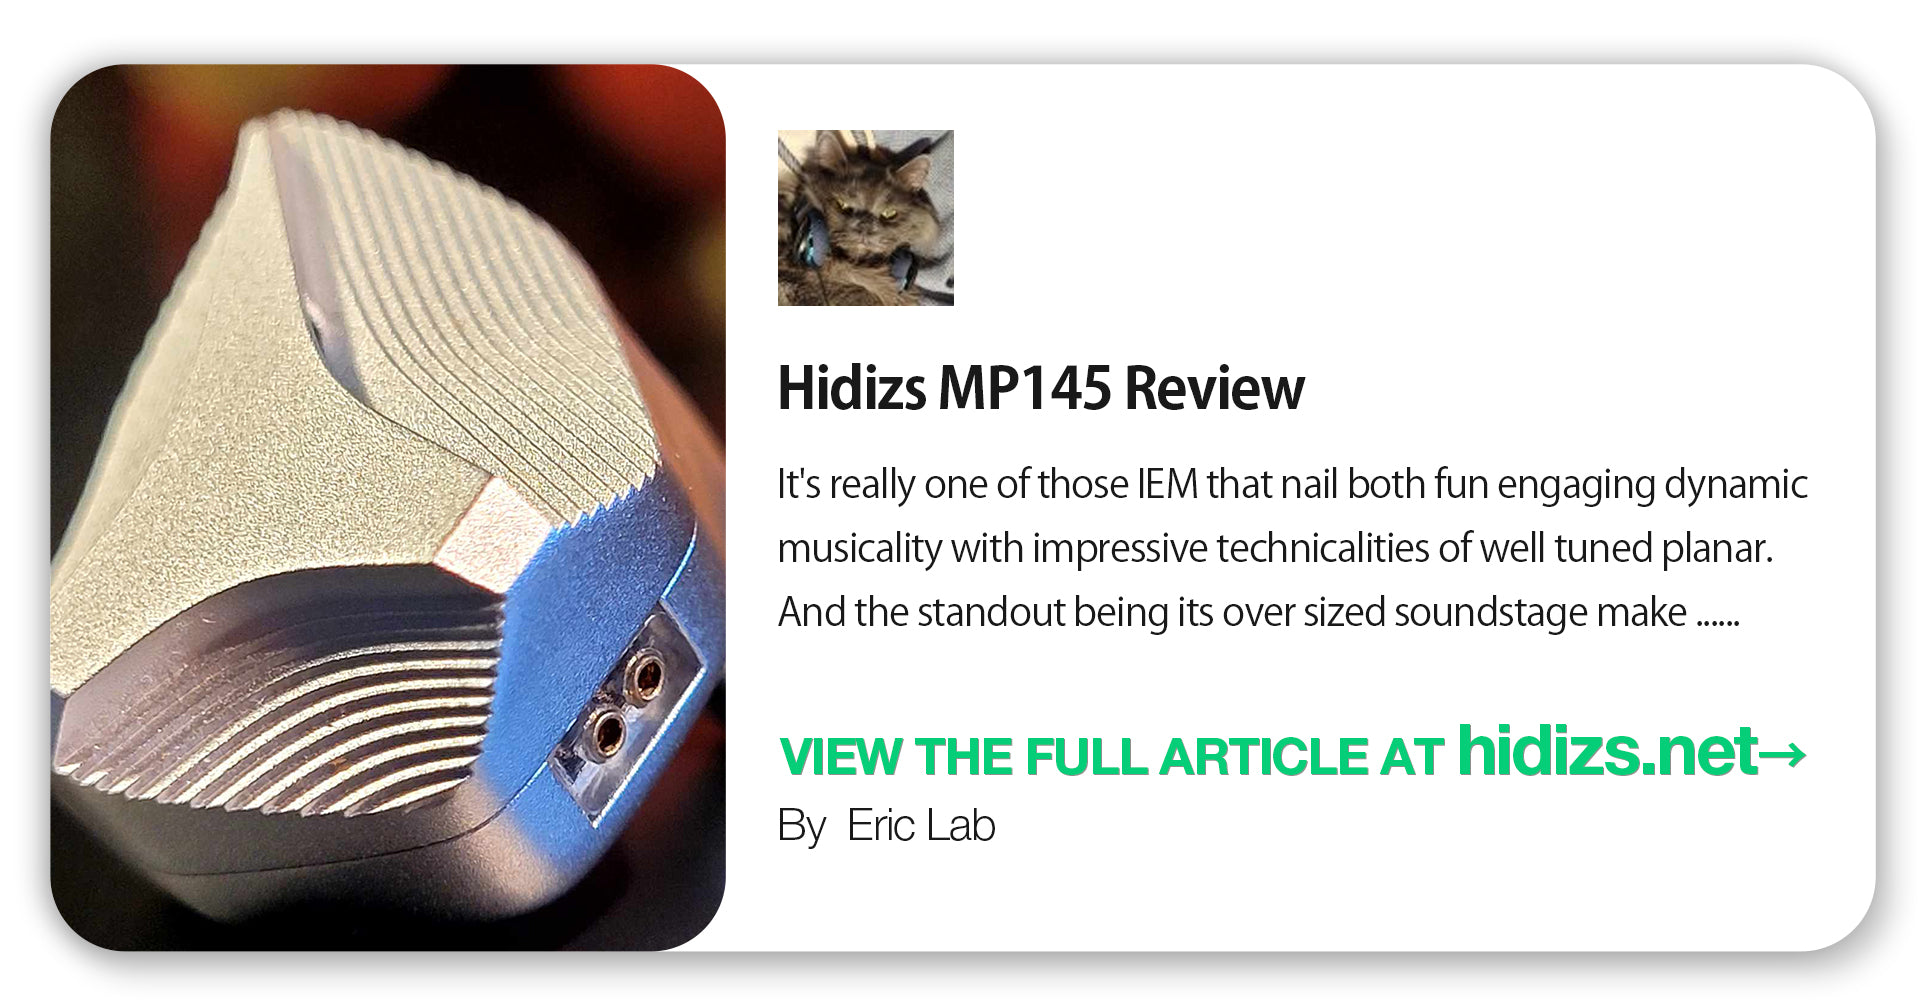 Hidizs MP145 Review - Eric Lab